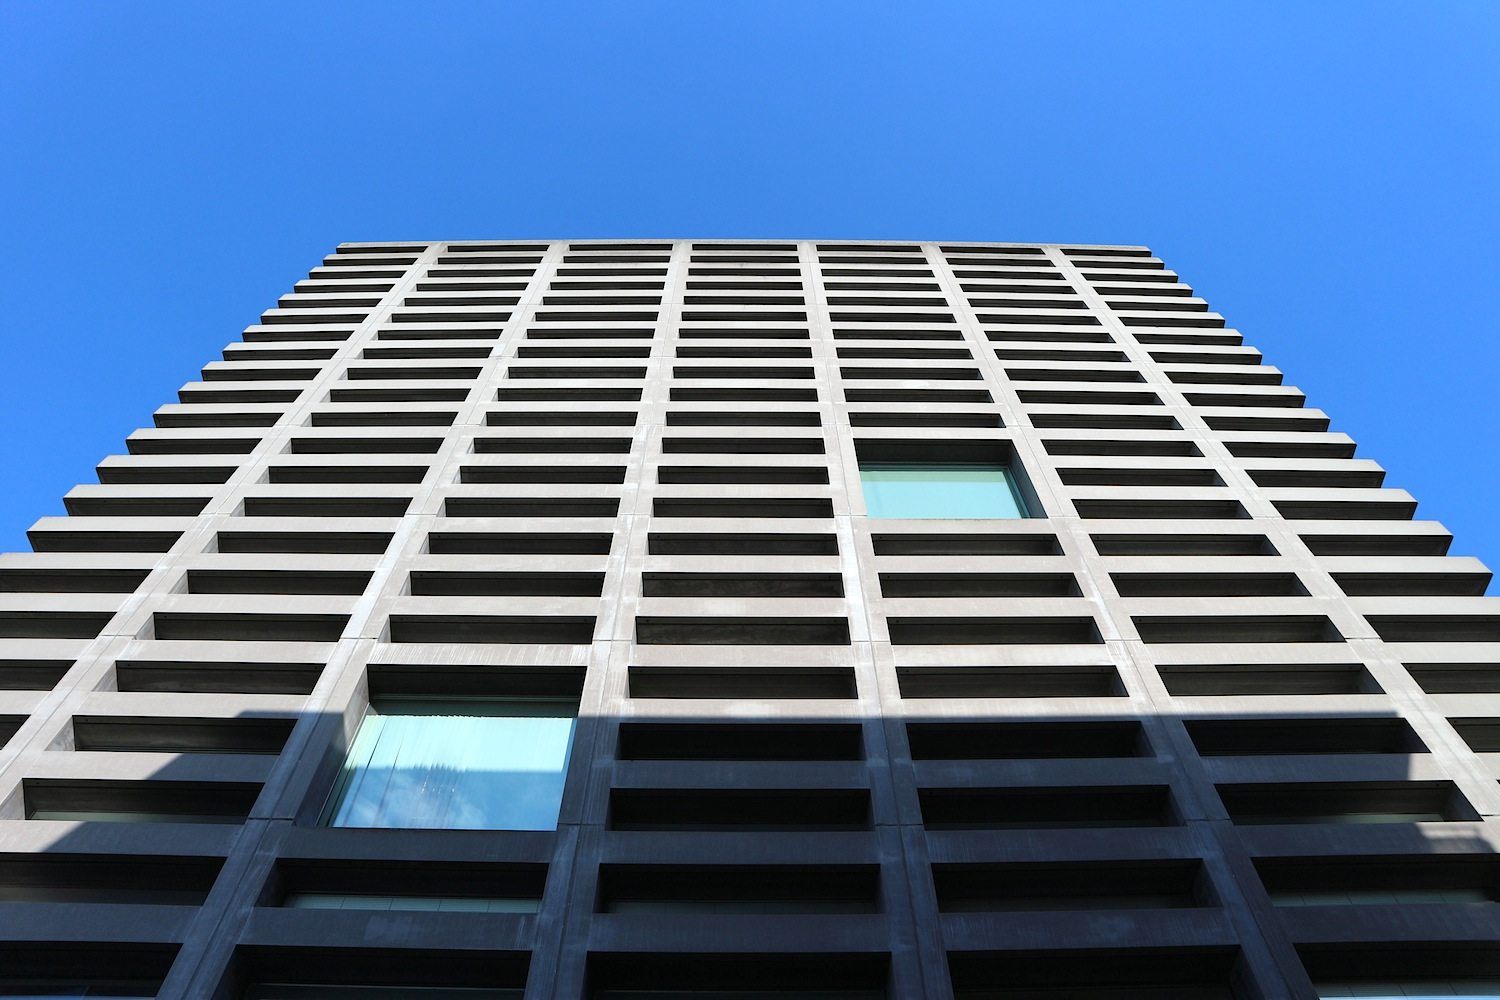 MVRDV / PBT, 2002. Oft ist die Architektursprache der Rotterdamer farbenfroh-fragil. Bei diesem Projekt setzten sie auf Ruhe und die robuste Kraft des Betons. 